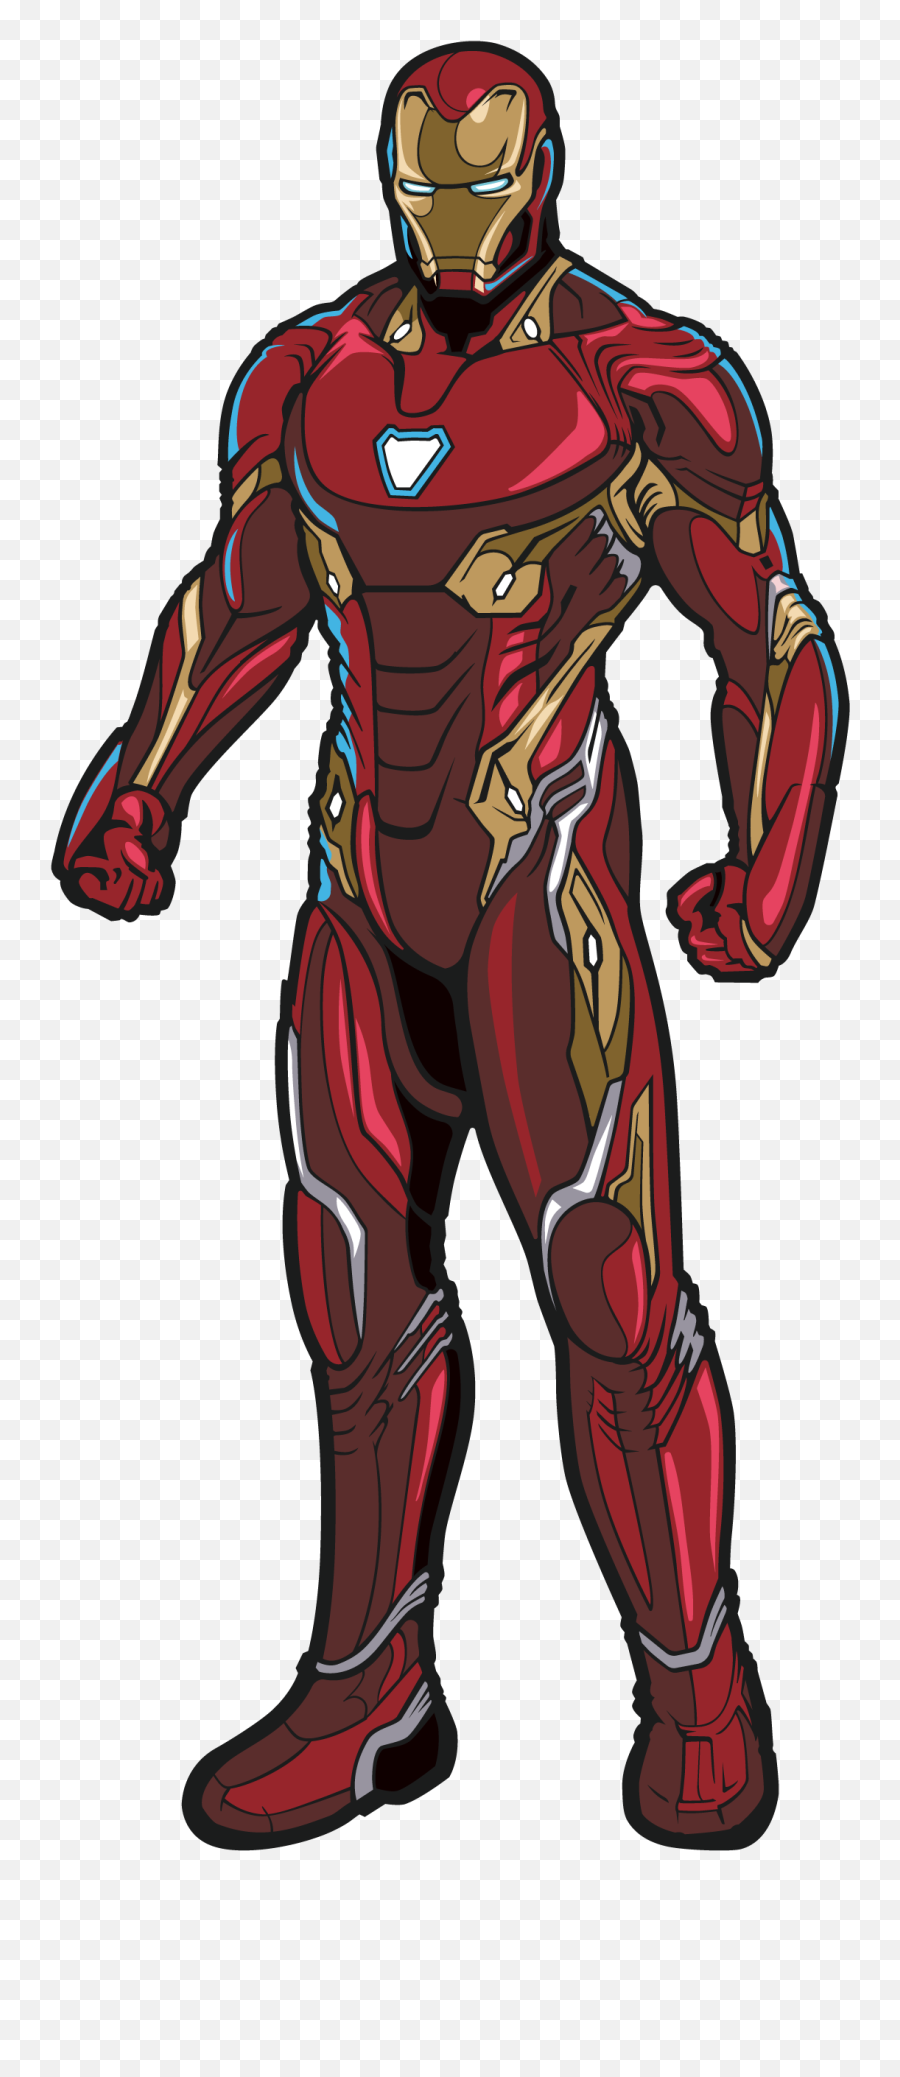 Avengers Captain America Black Panther - Draw Cartoon Iron Man Png,Iron Man  Transparent - free transparent png images 